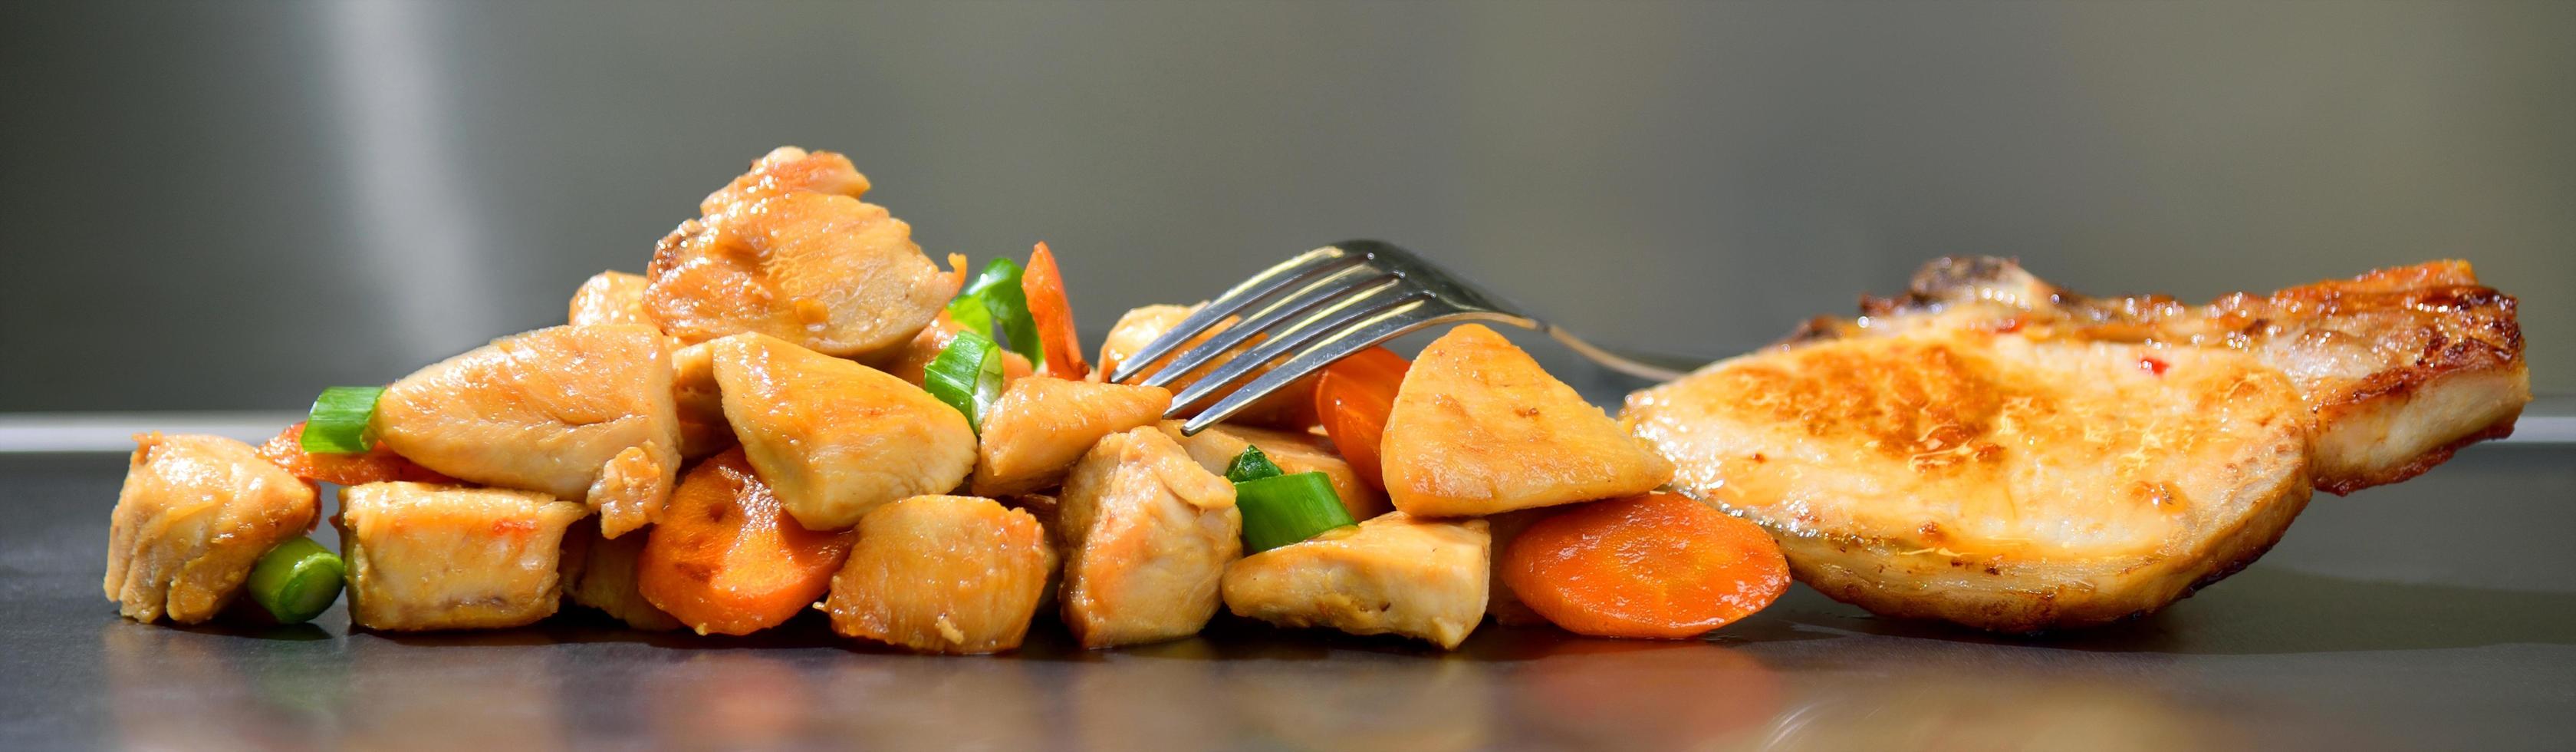 Fatias de frango assado temperado com cenoura e alho-poró em fundo de aço inoxidável foto